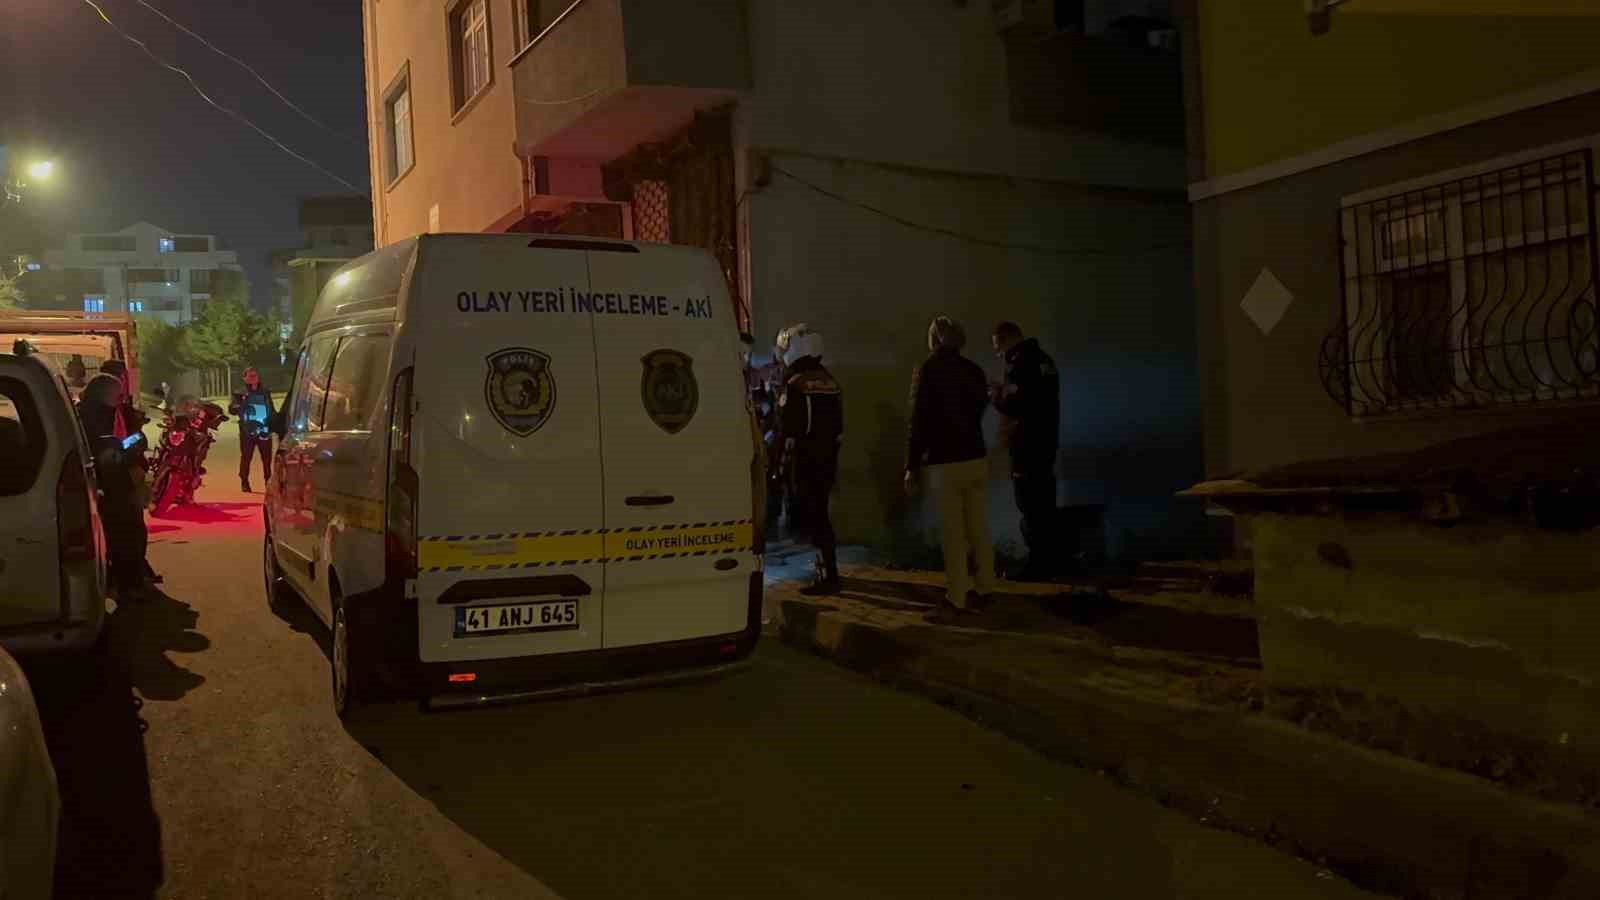 kanalizasyon kavgasinda turkiye sampiyonu boksor tabancayla vuruldu 1 WZ9jPVDp